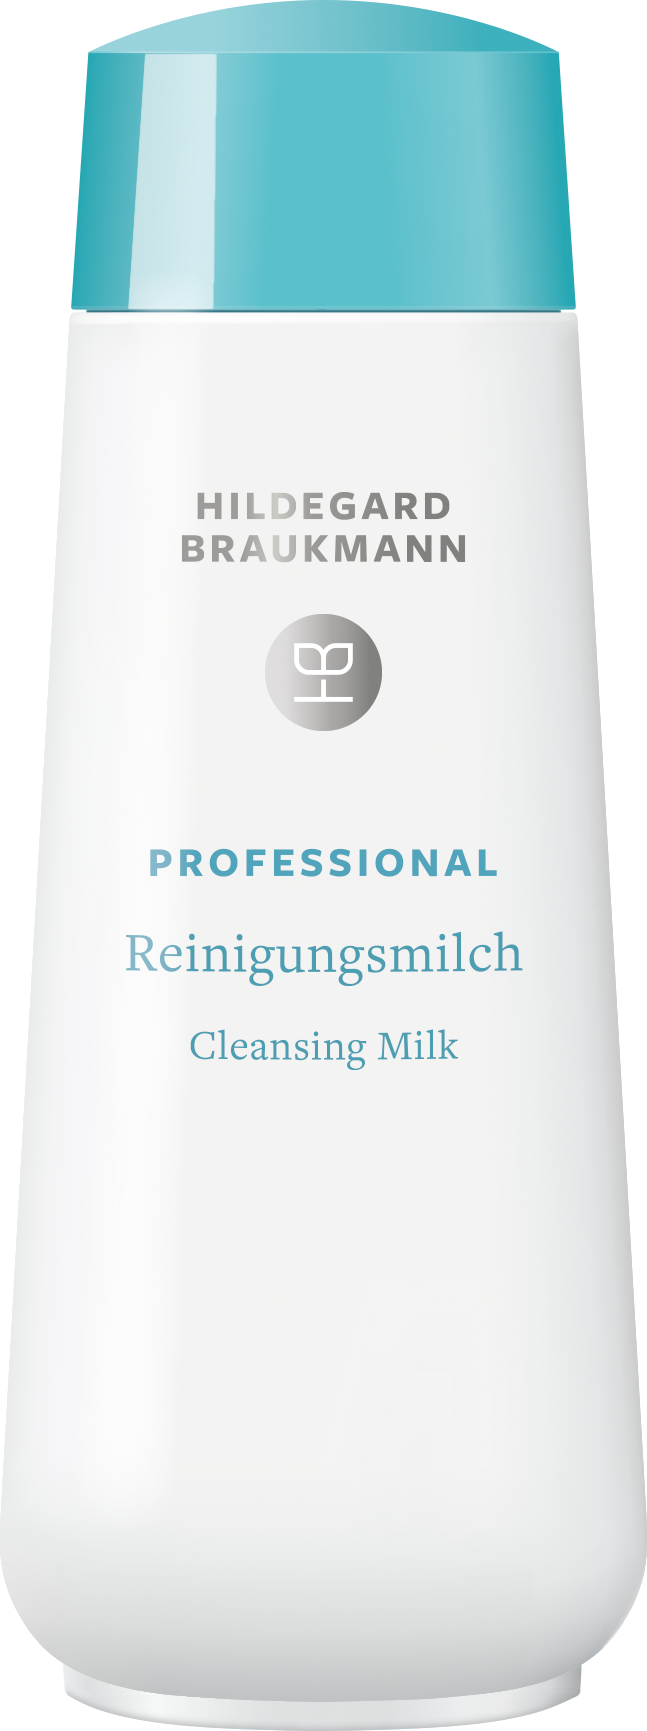 Hildegard Braukmann Professional Reinigungsmilch (200ml)